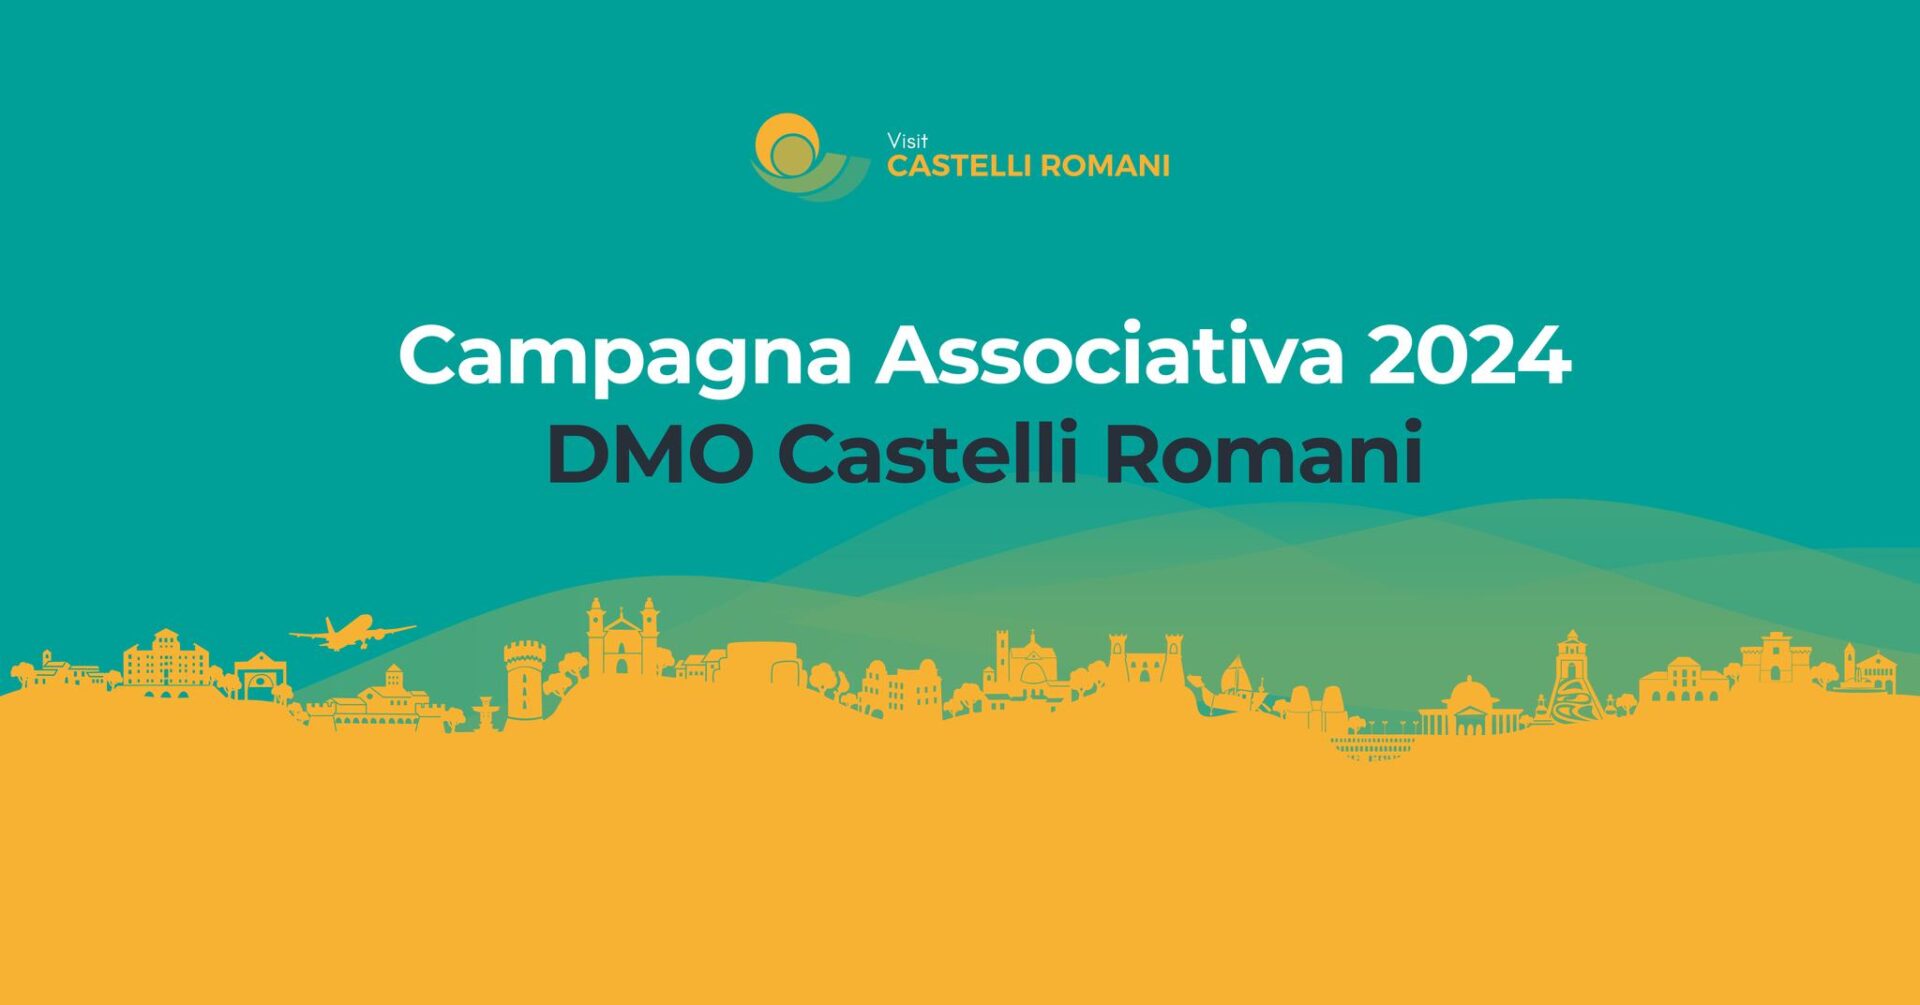 DMO Castelli Romani. Domani prenderà il via la campagna associativa 2024. L'evento a Villa Mondragone